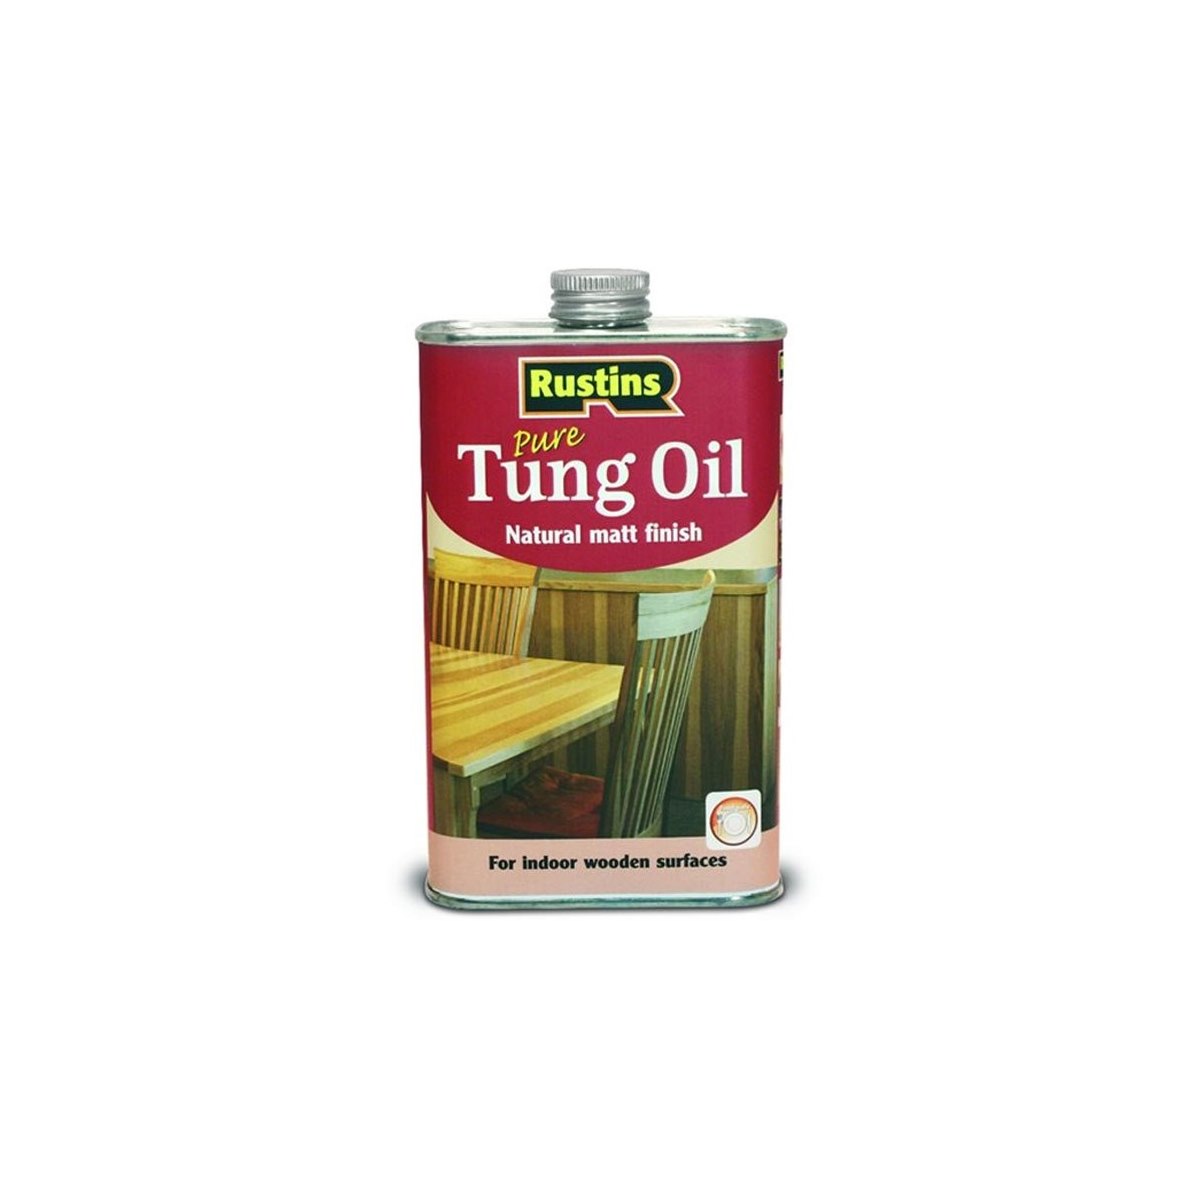 Rustins Pure Tung Oil 1 Litre